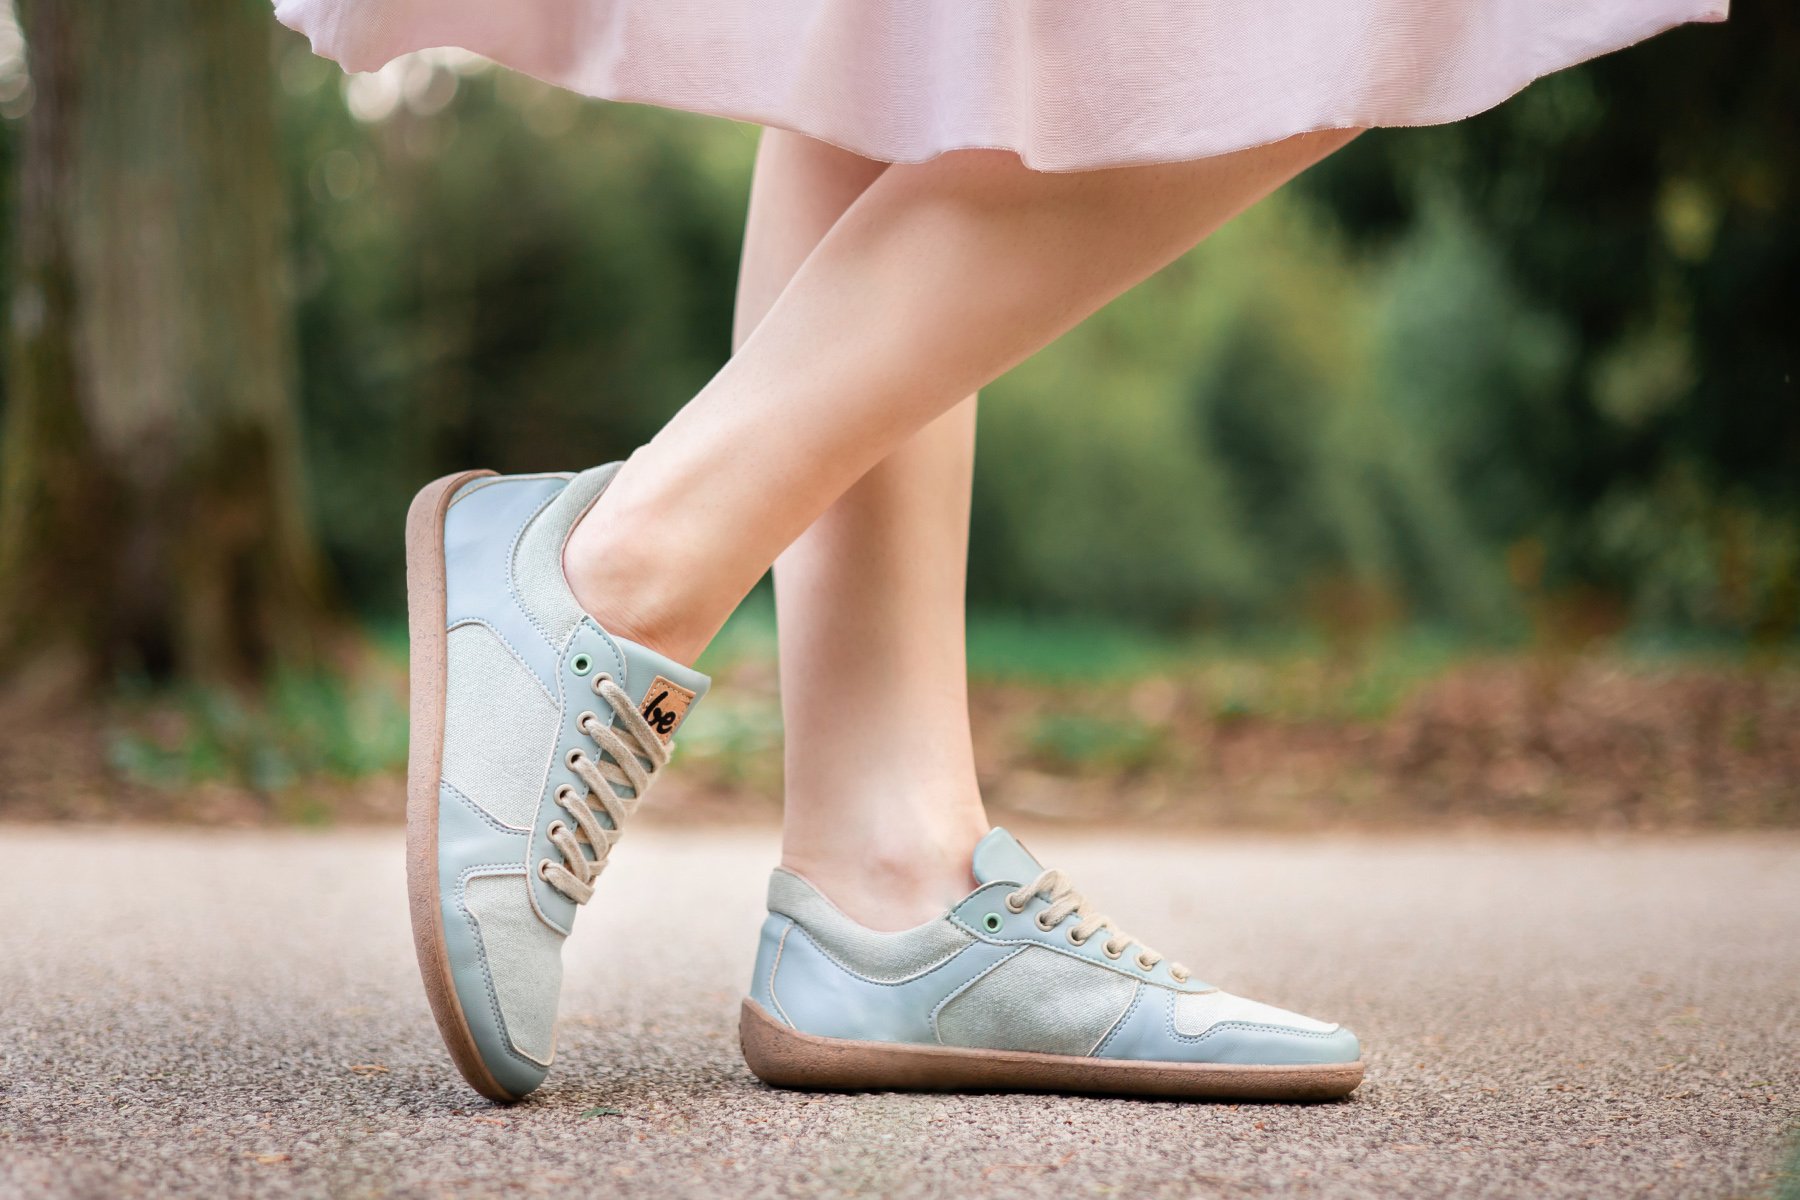 Women's Slip On Shoes Sneakers Artificial PU Upper & Rubber Sole Sneakers  Gift for Girlfriend Female Friends 39 Beige 